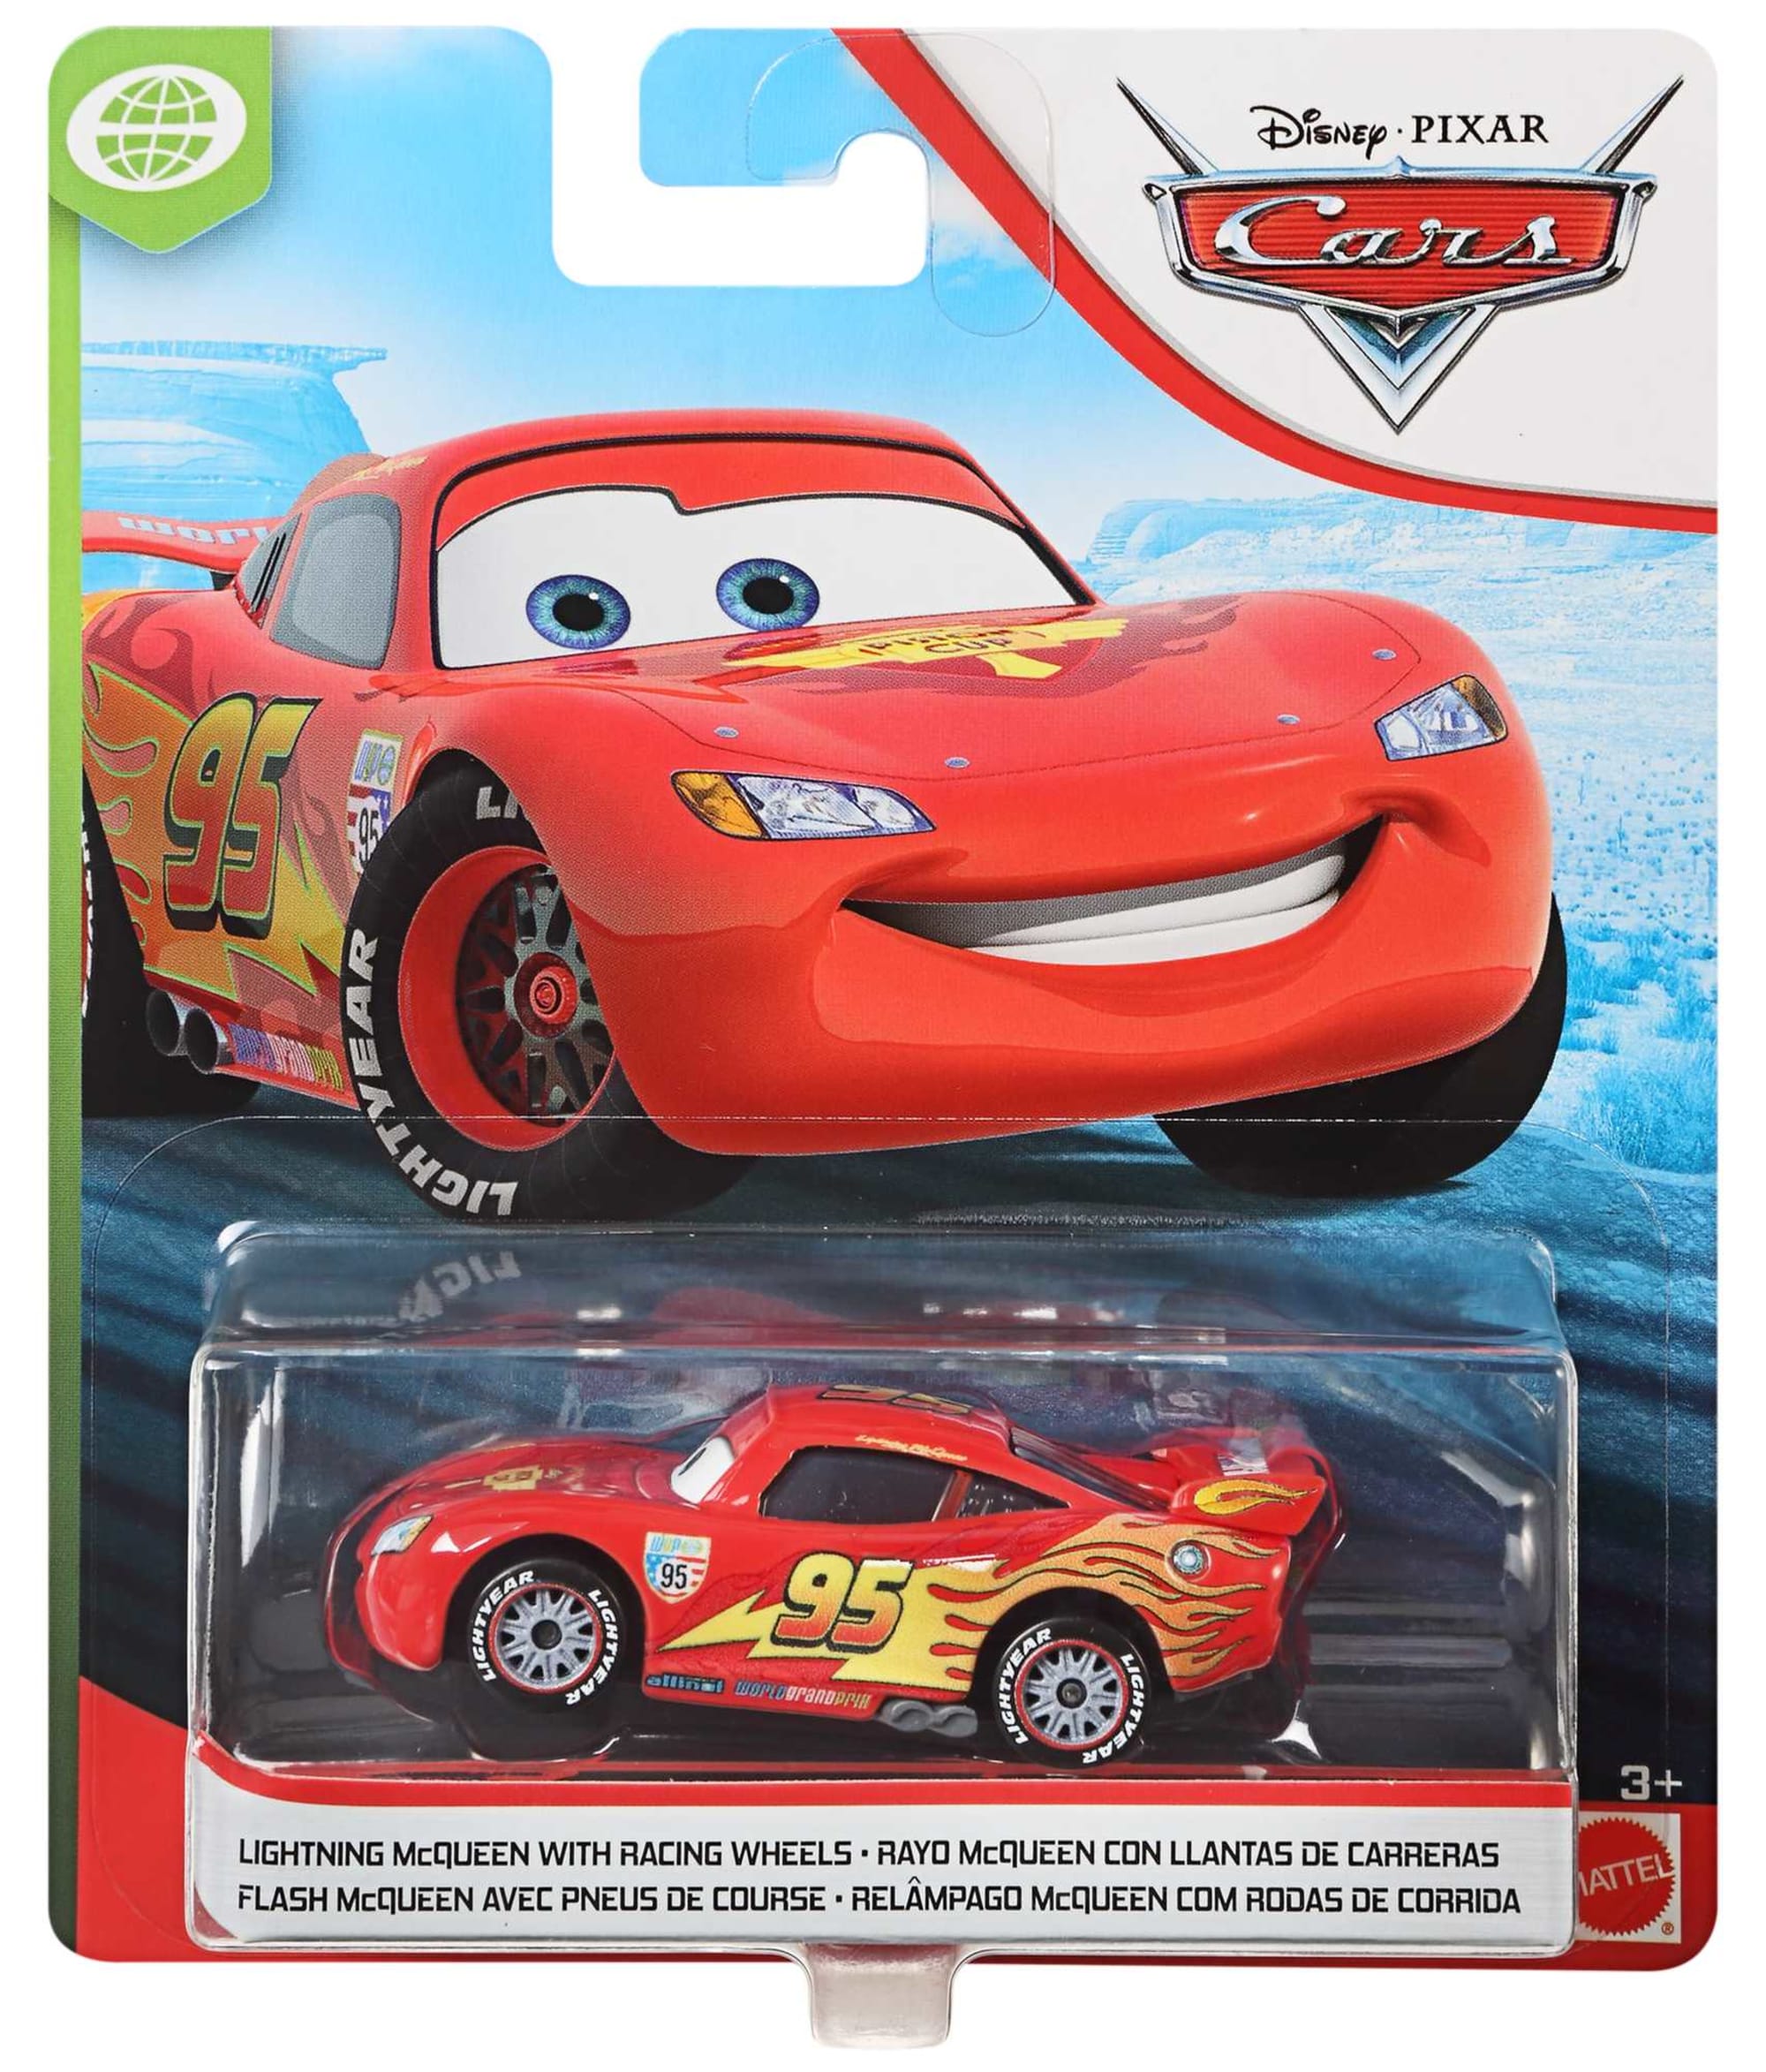 Cars de Disney y Pixar Vehículo de Juguete Rayo McQueen llantas de